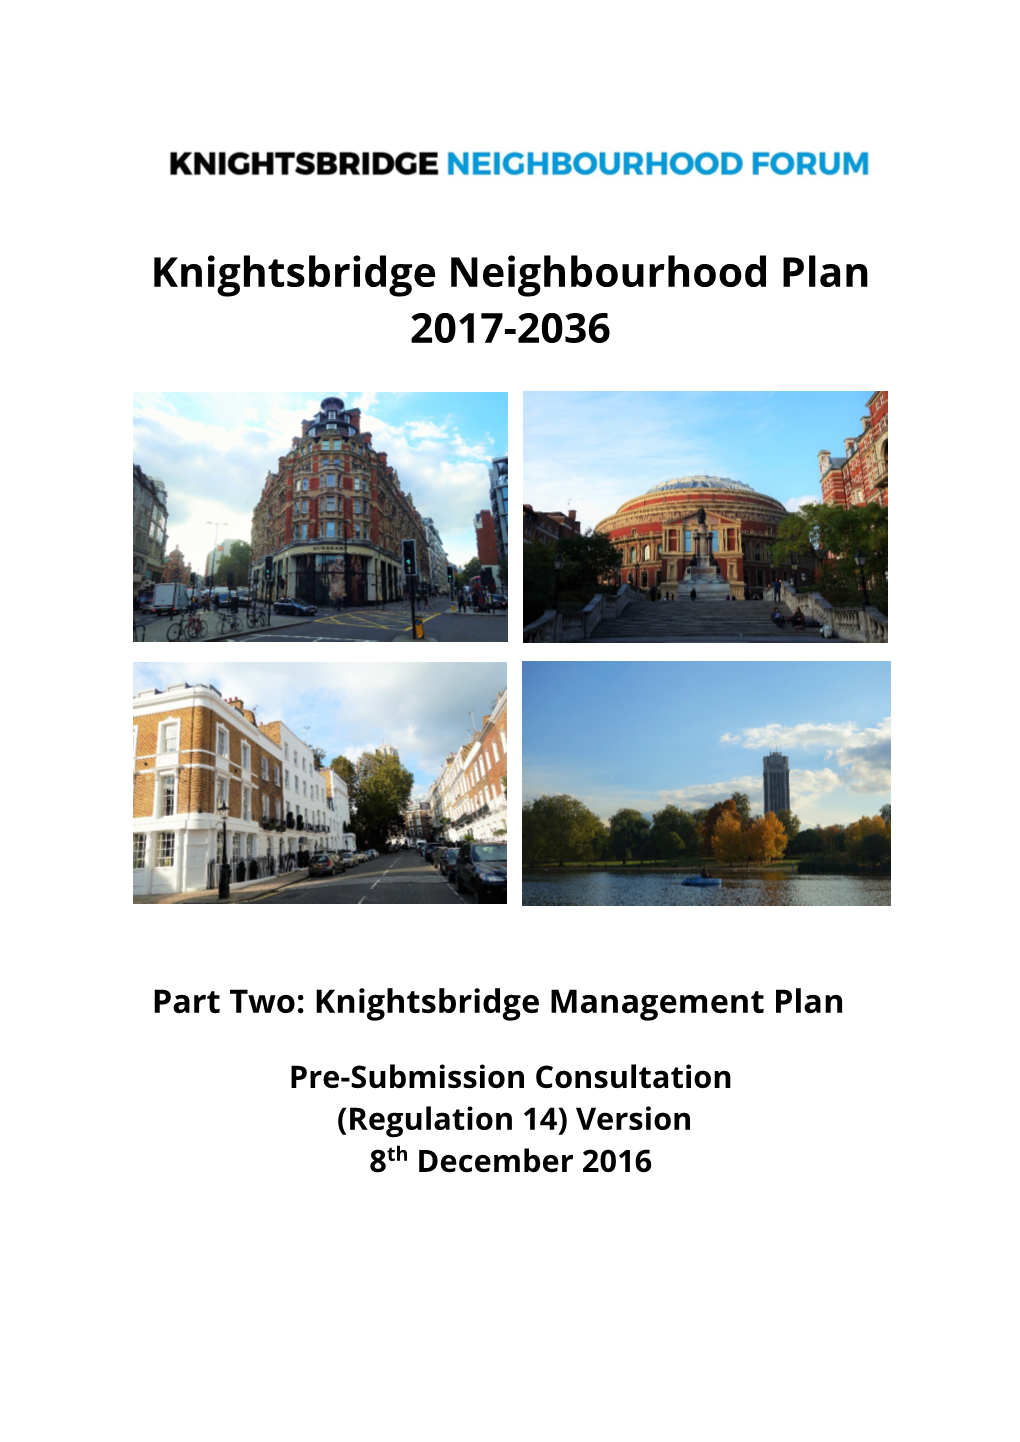 Knightsbridge Management Plan